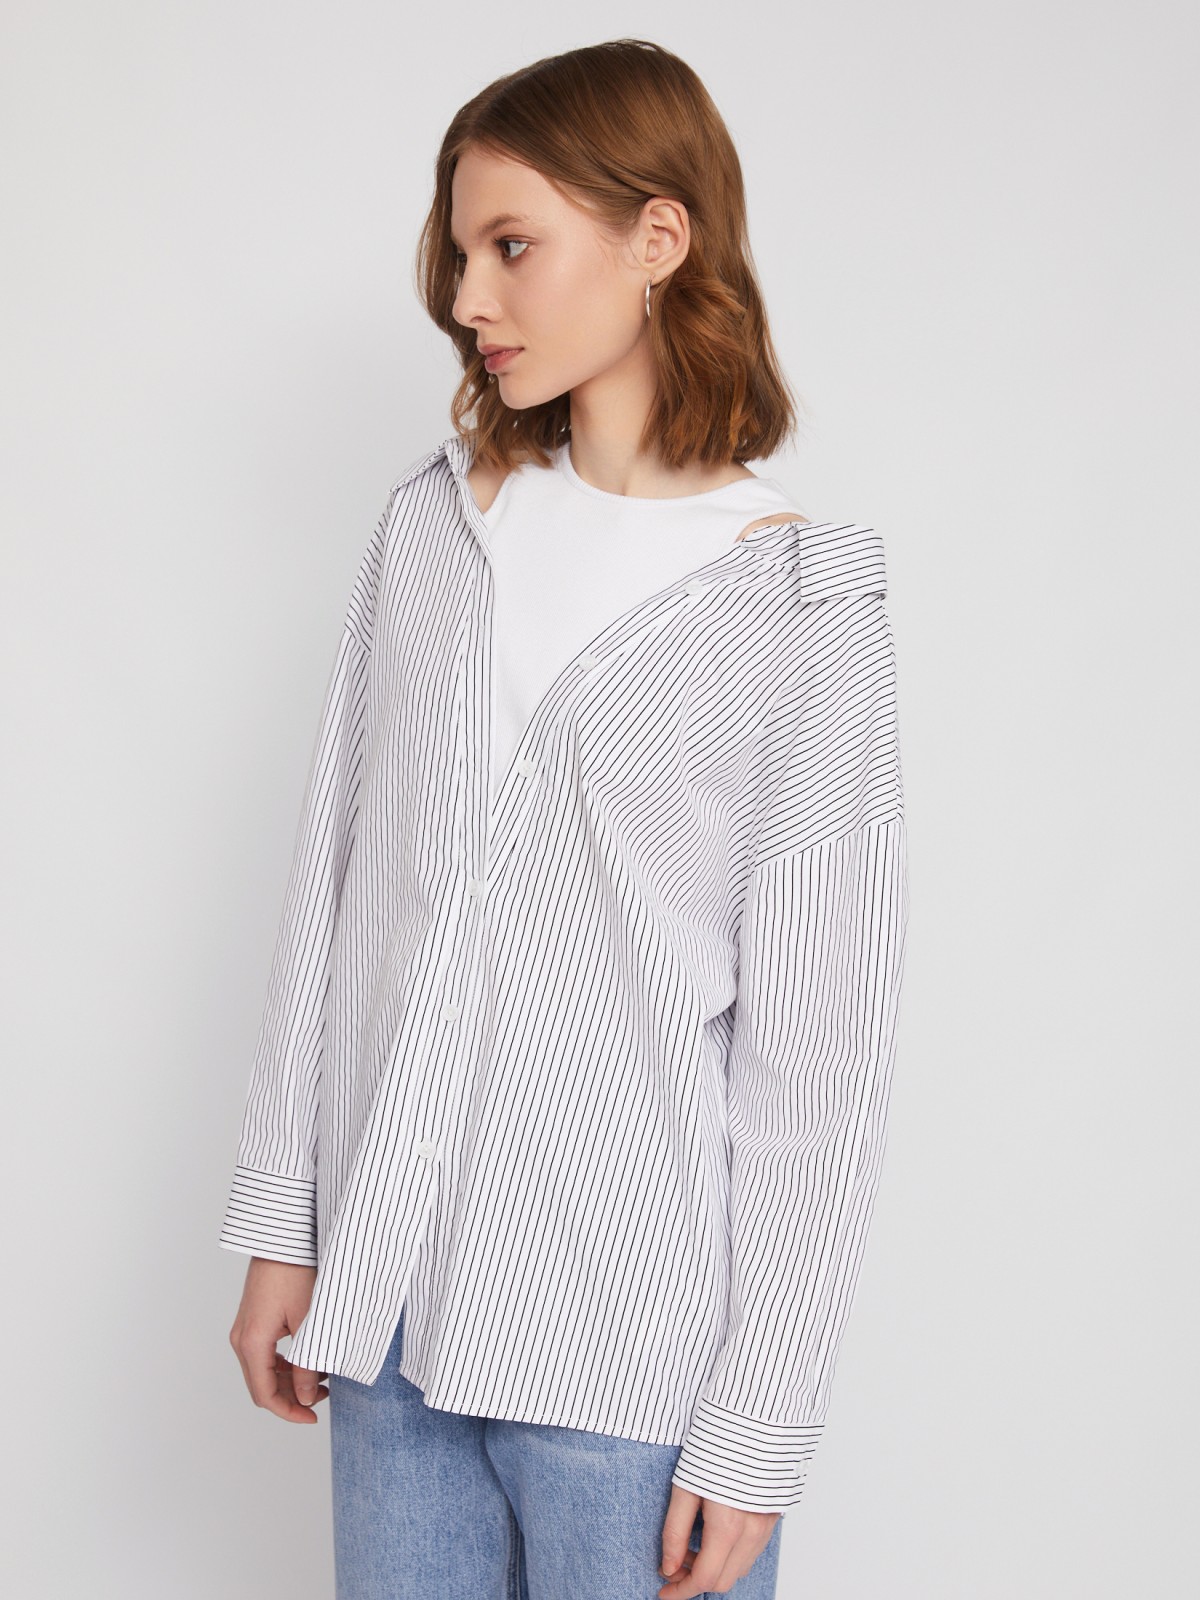 Комбинированная блузка-рубашка с вшитым топом zolla 02421117Y023, цвет белый, размер XS - фото 1